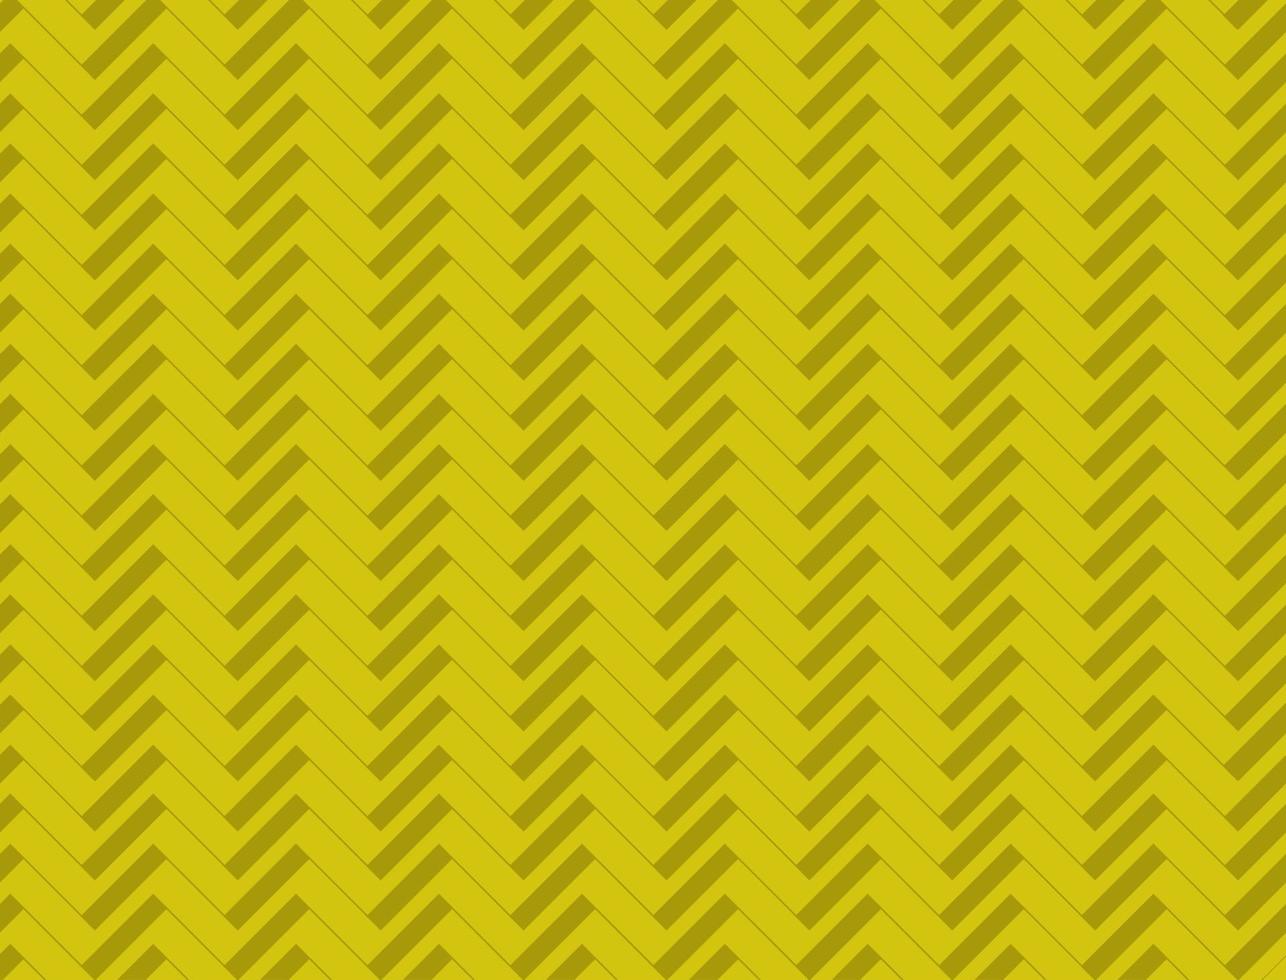 abstracte achtergrond in gele kleur met gestreept patroon vector